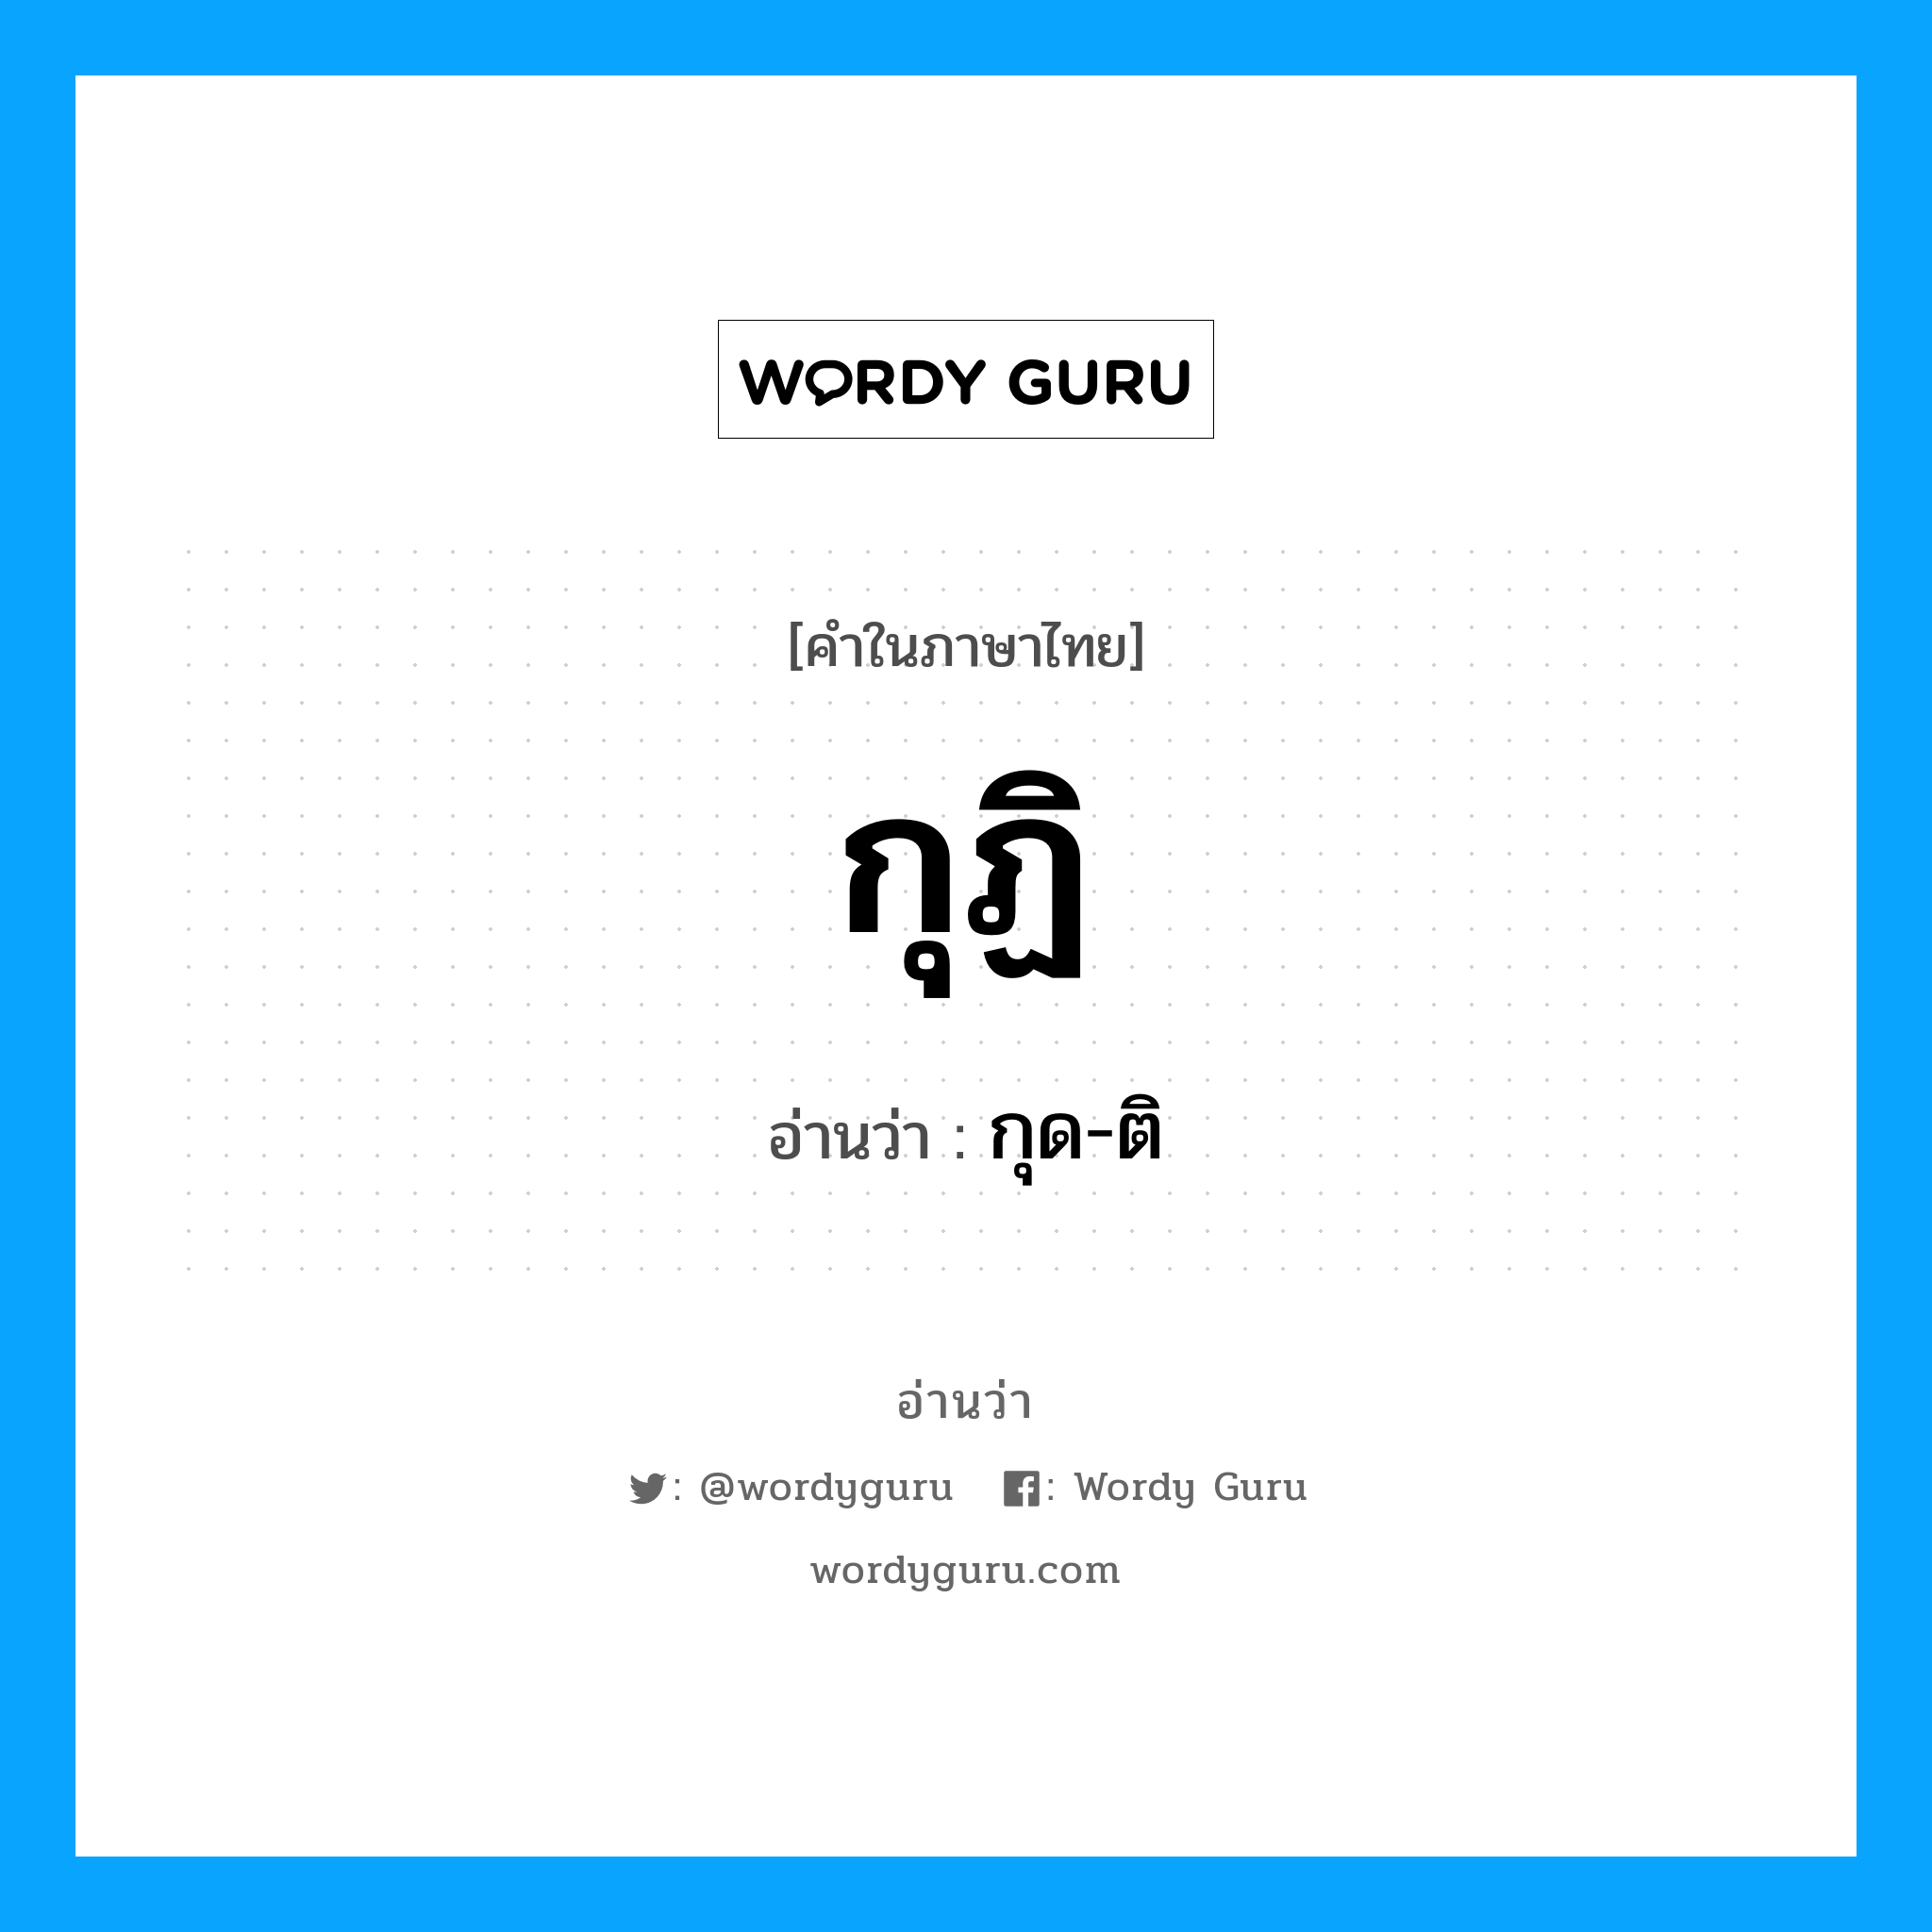 กุด-ติ เป็นคำอ่านของคำไหน?, คำในภาษาไทย กุด-ติ อ่านว่า กุฏิ